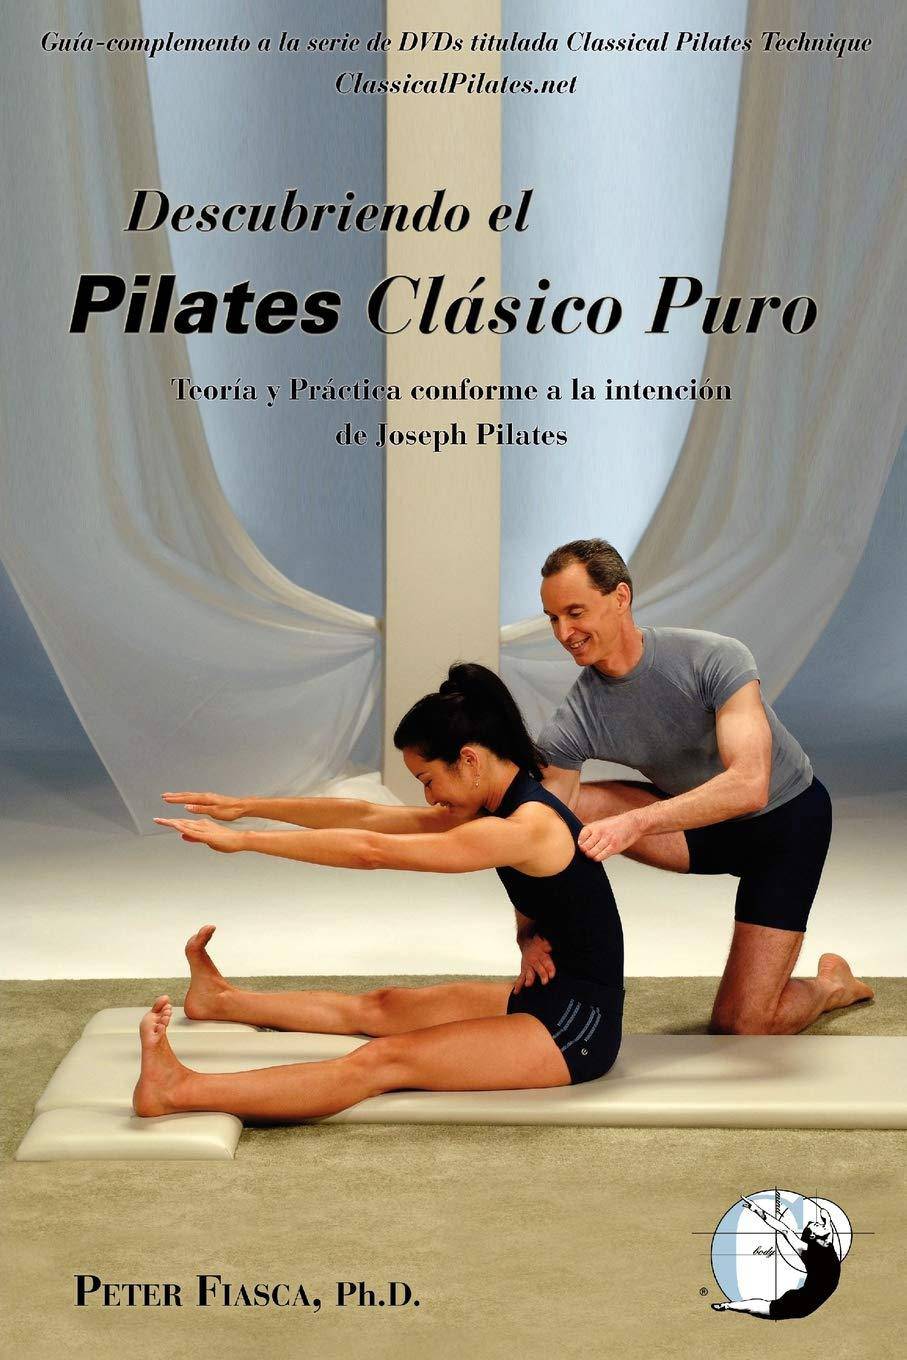 Descubriendo Pilates Clasico Puro - SureShot Books Publishing LLC